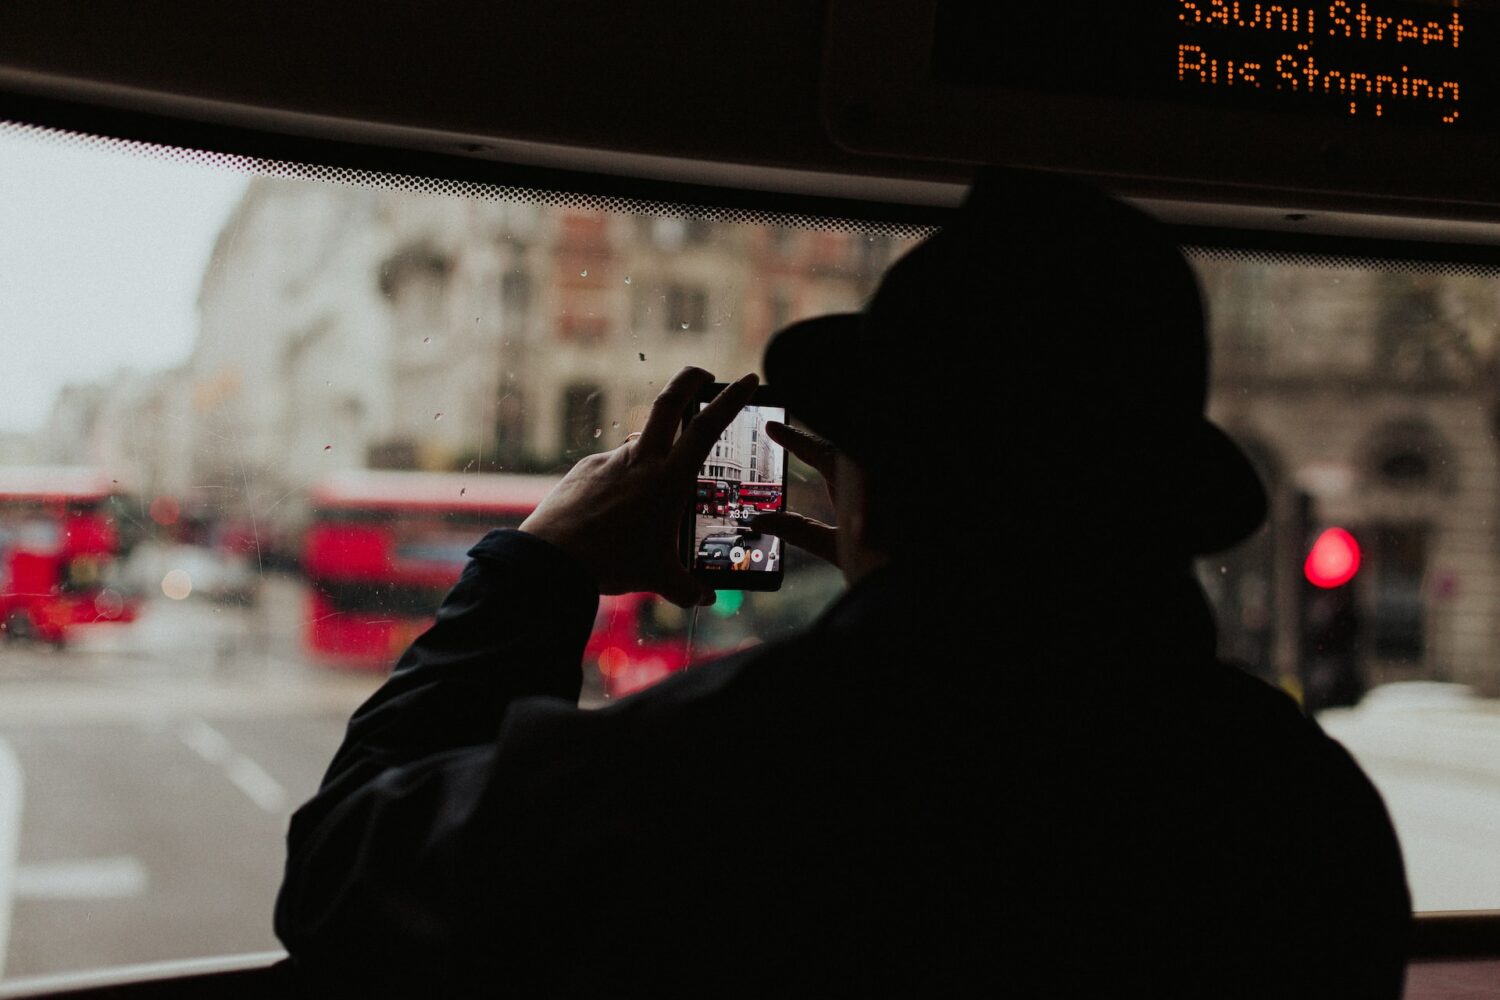 Uma mulher de costas usando um casaco e um chapéu, ela está segurando um celular na posição horizontal para fotografar uma rua cheia de ônibus vermelhos